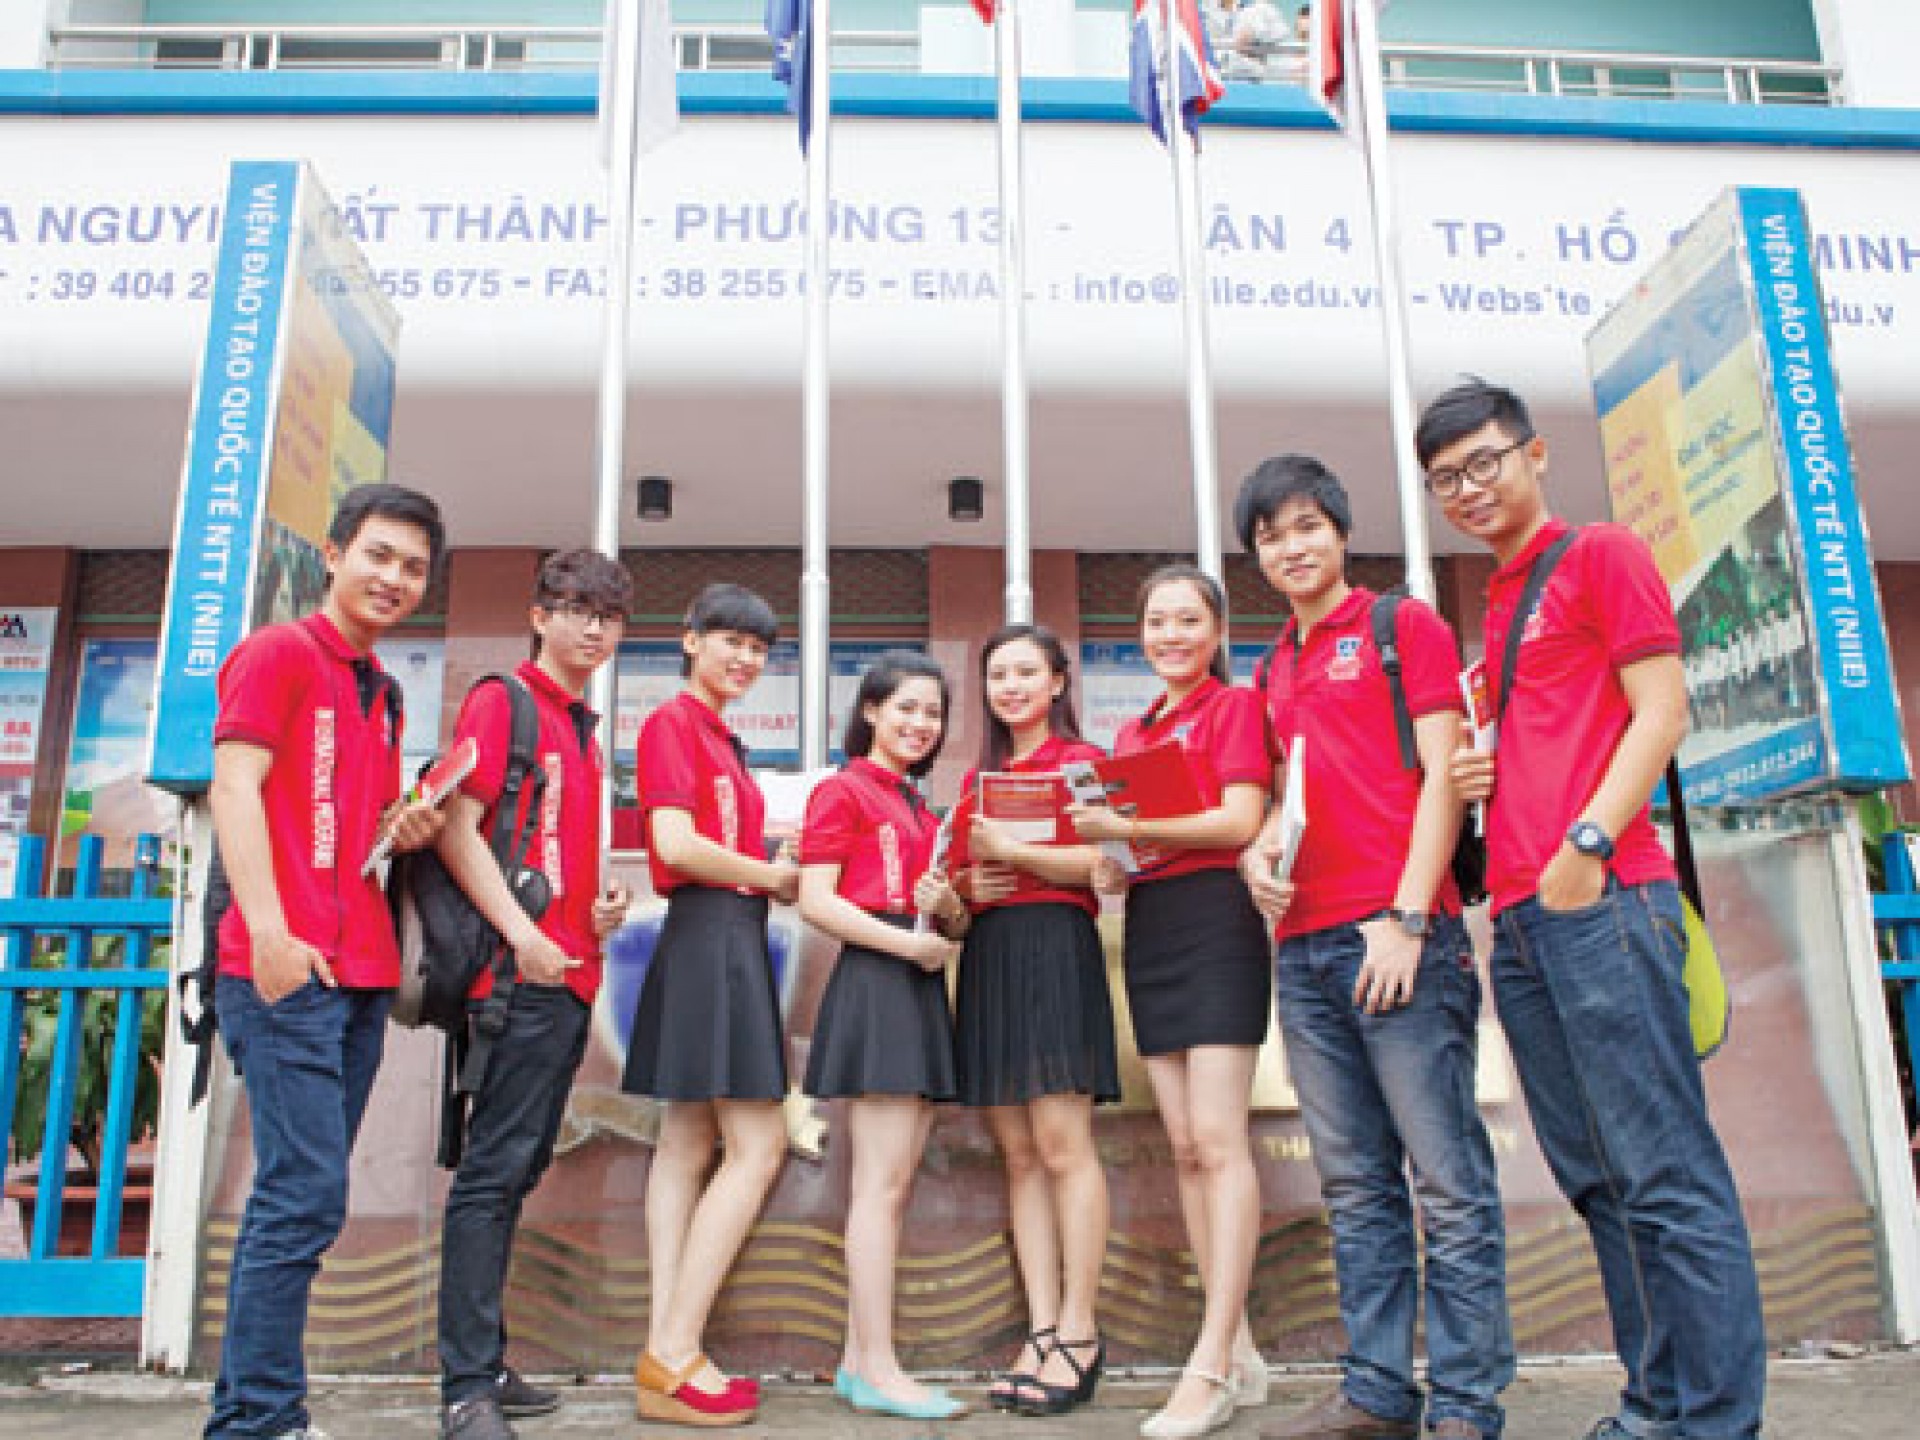 Đại học Nguyễn Tất Thành nhận tiêu chuẩn 3 sao Quốc tế